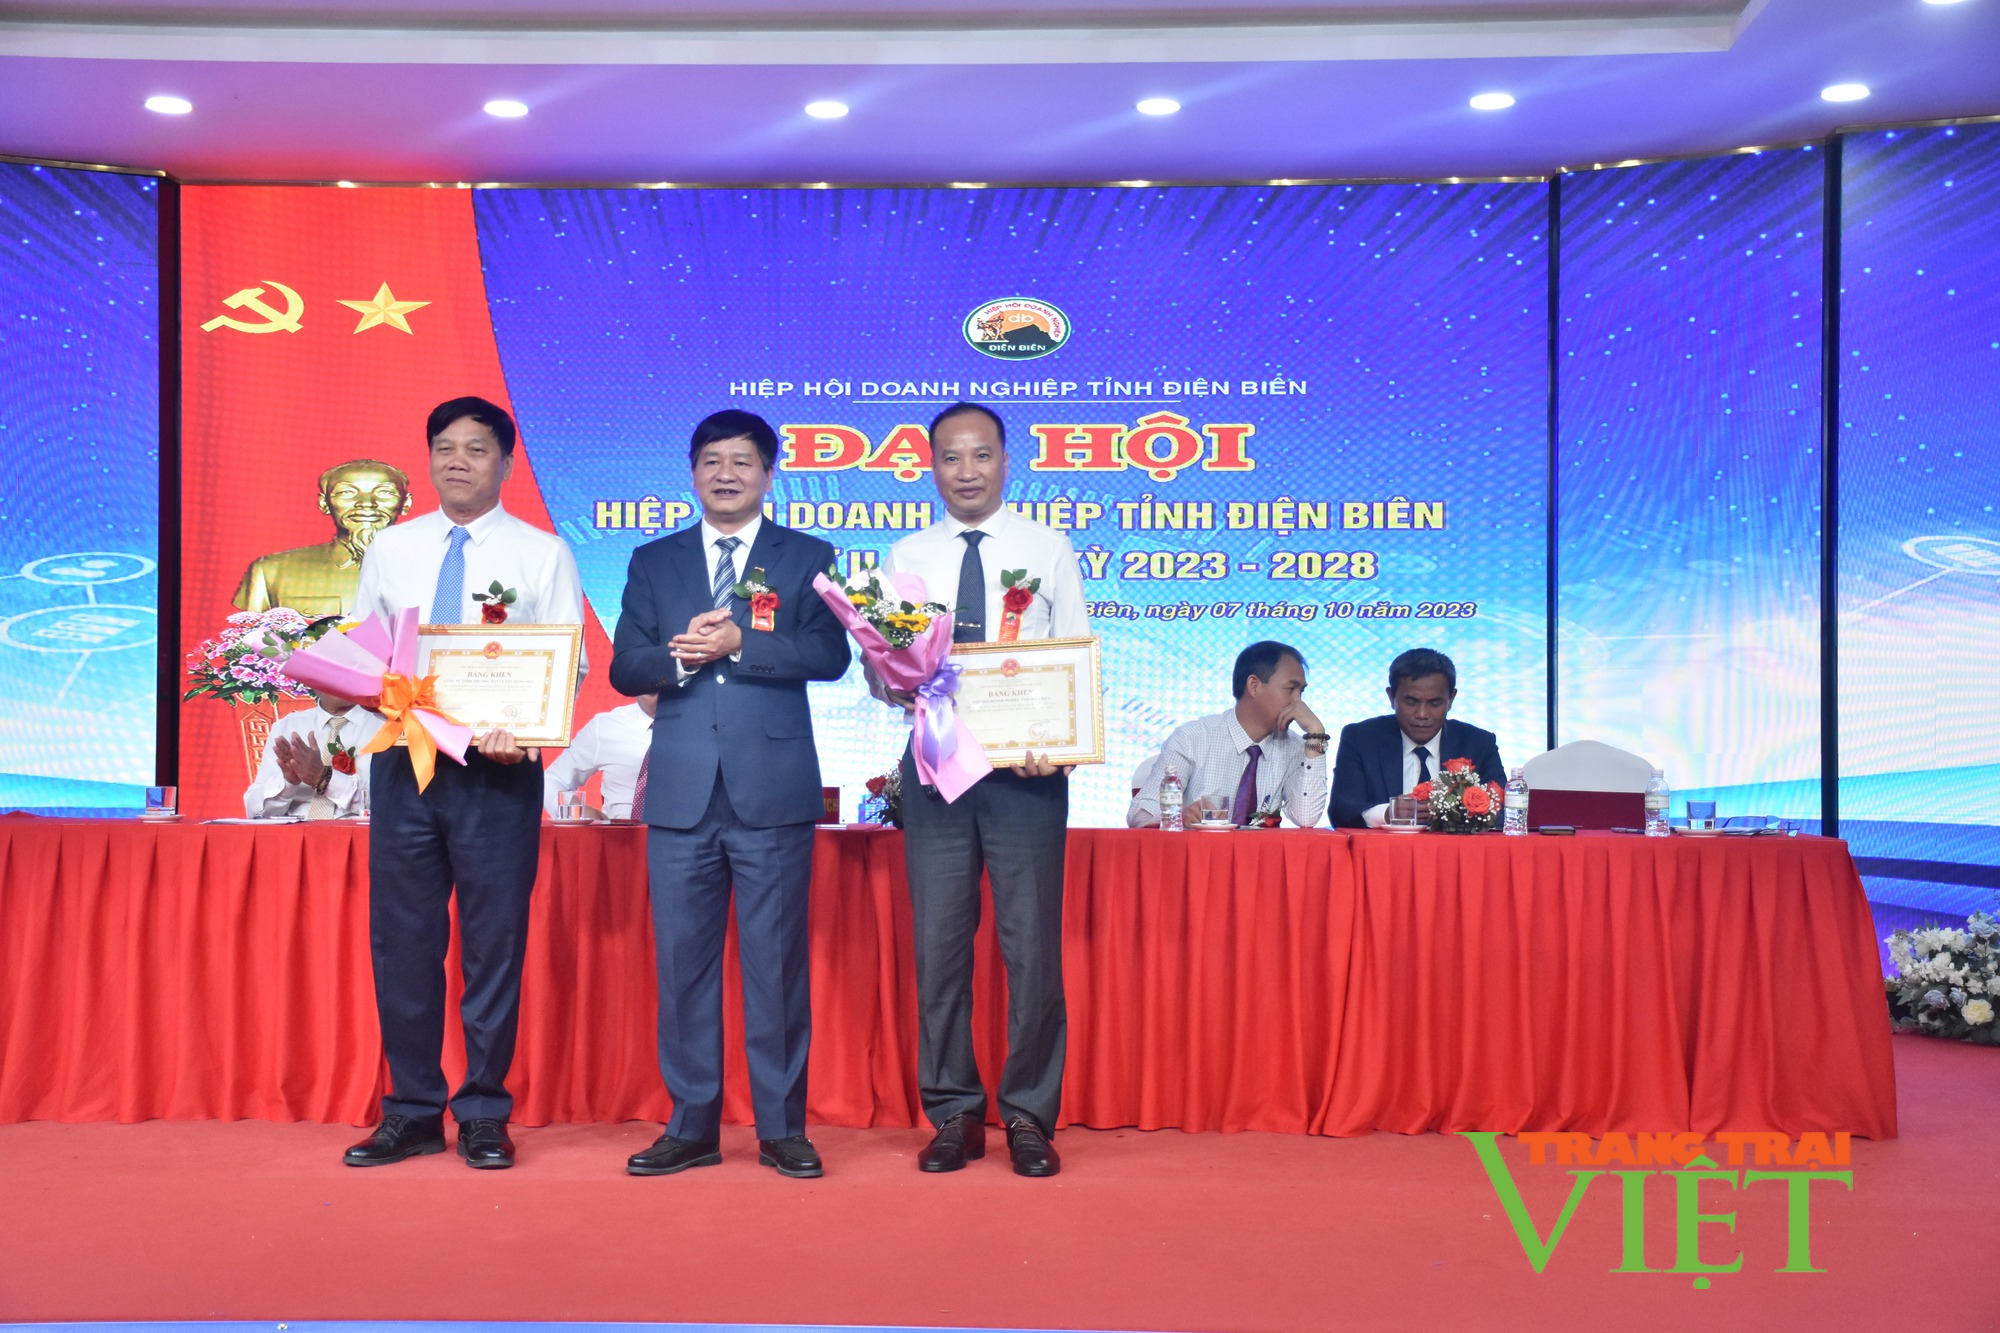 Hiệp hội Doanh nghiệp tỉnh Điện Biên làm tốt vai trò cầu nối doanh nghiệp - chính quyền - Ảnh 3.